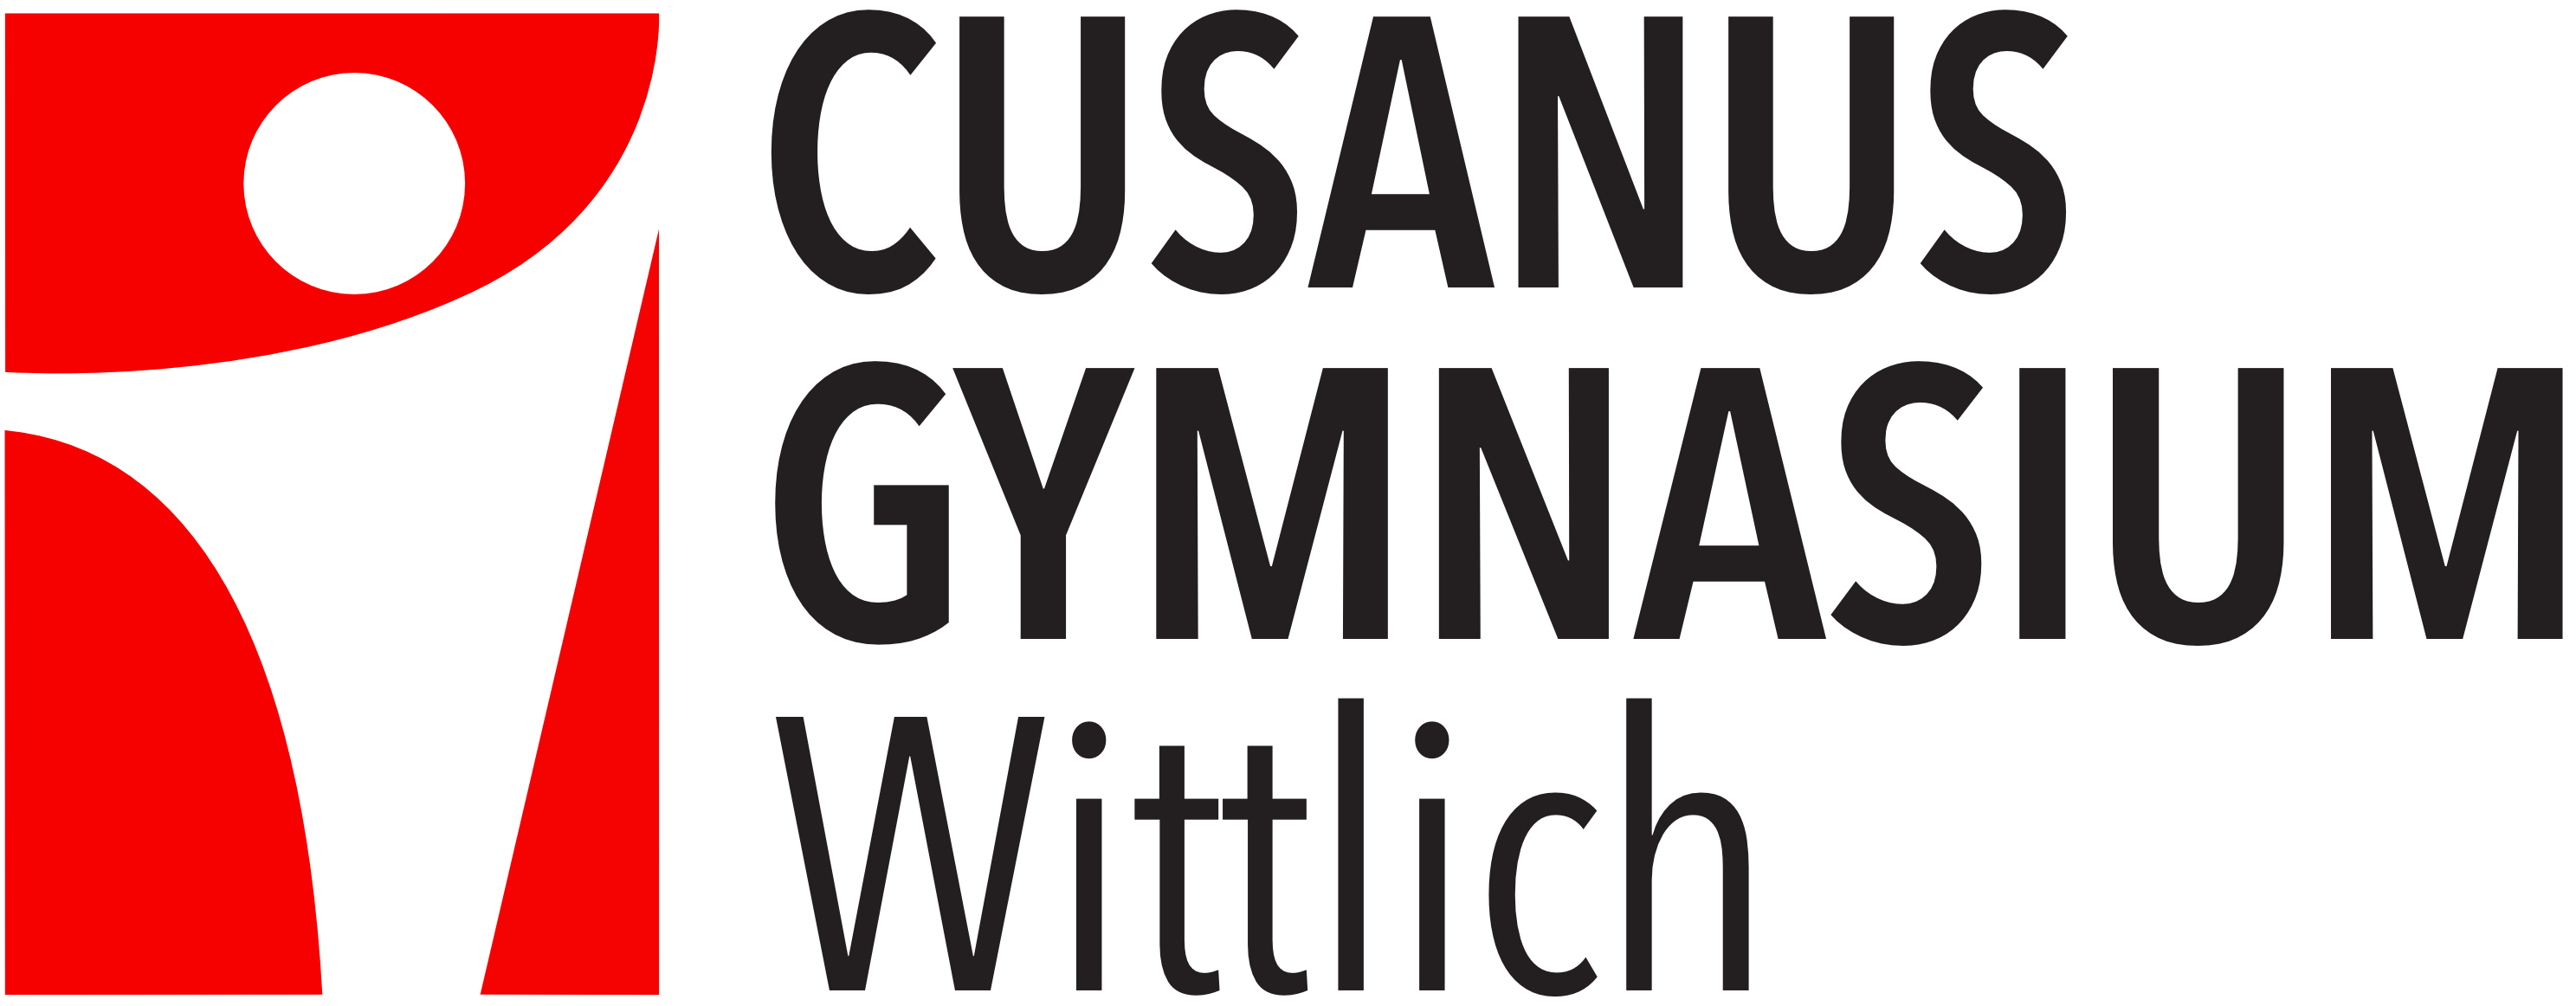 Cusanus Gymnasium Wittlich